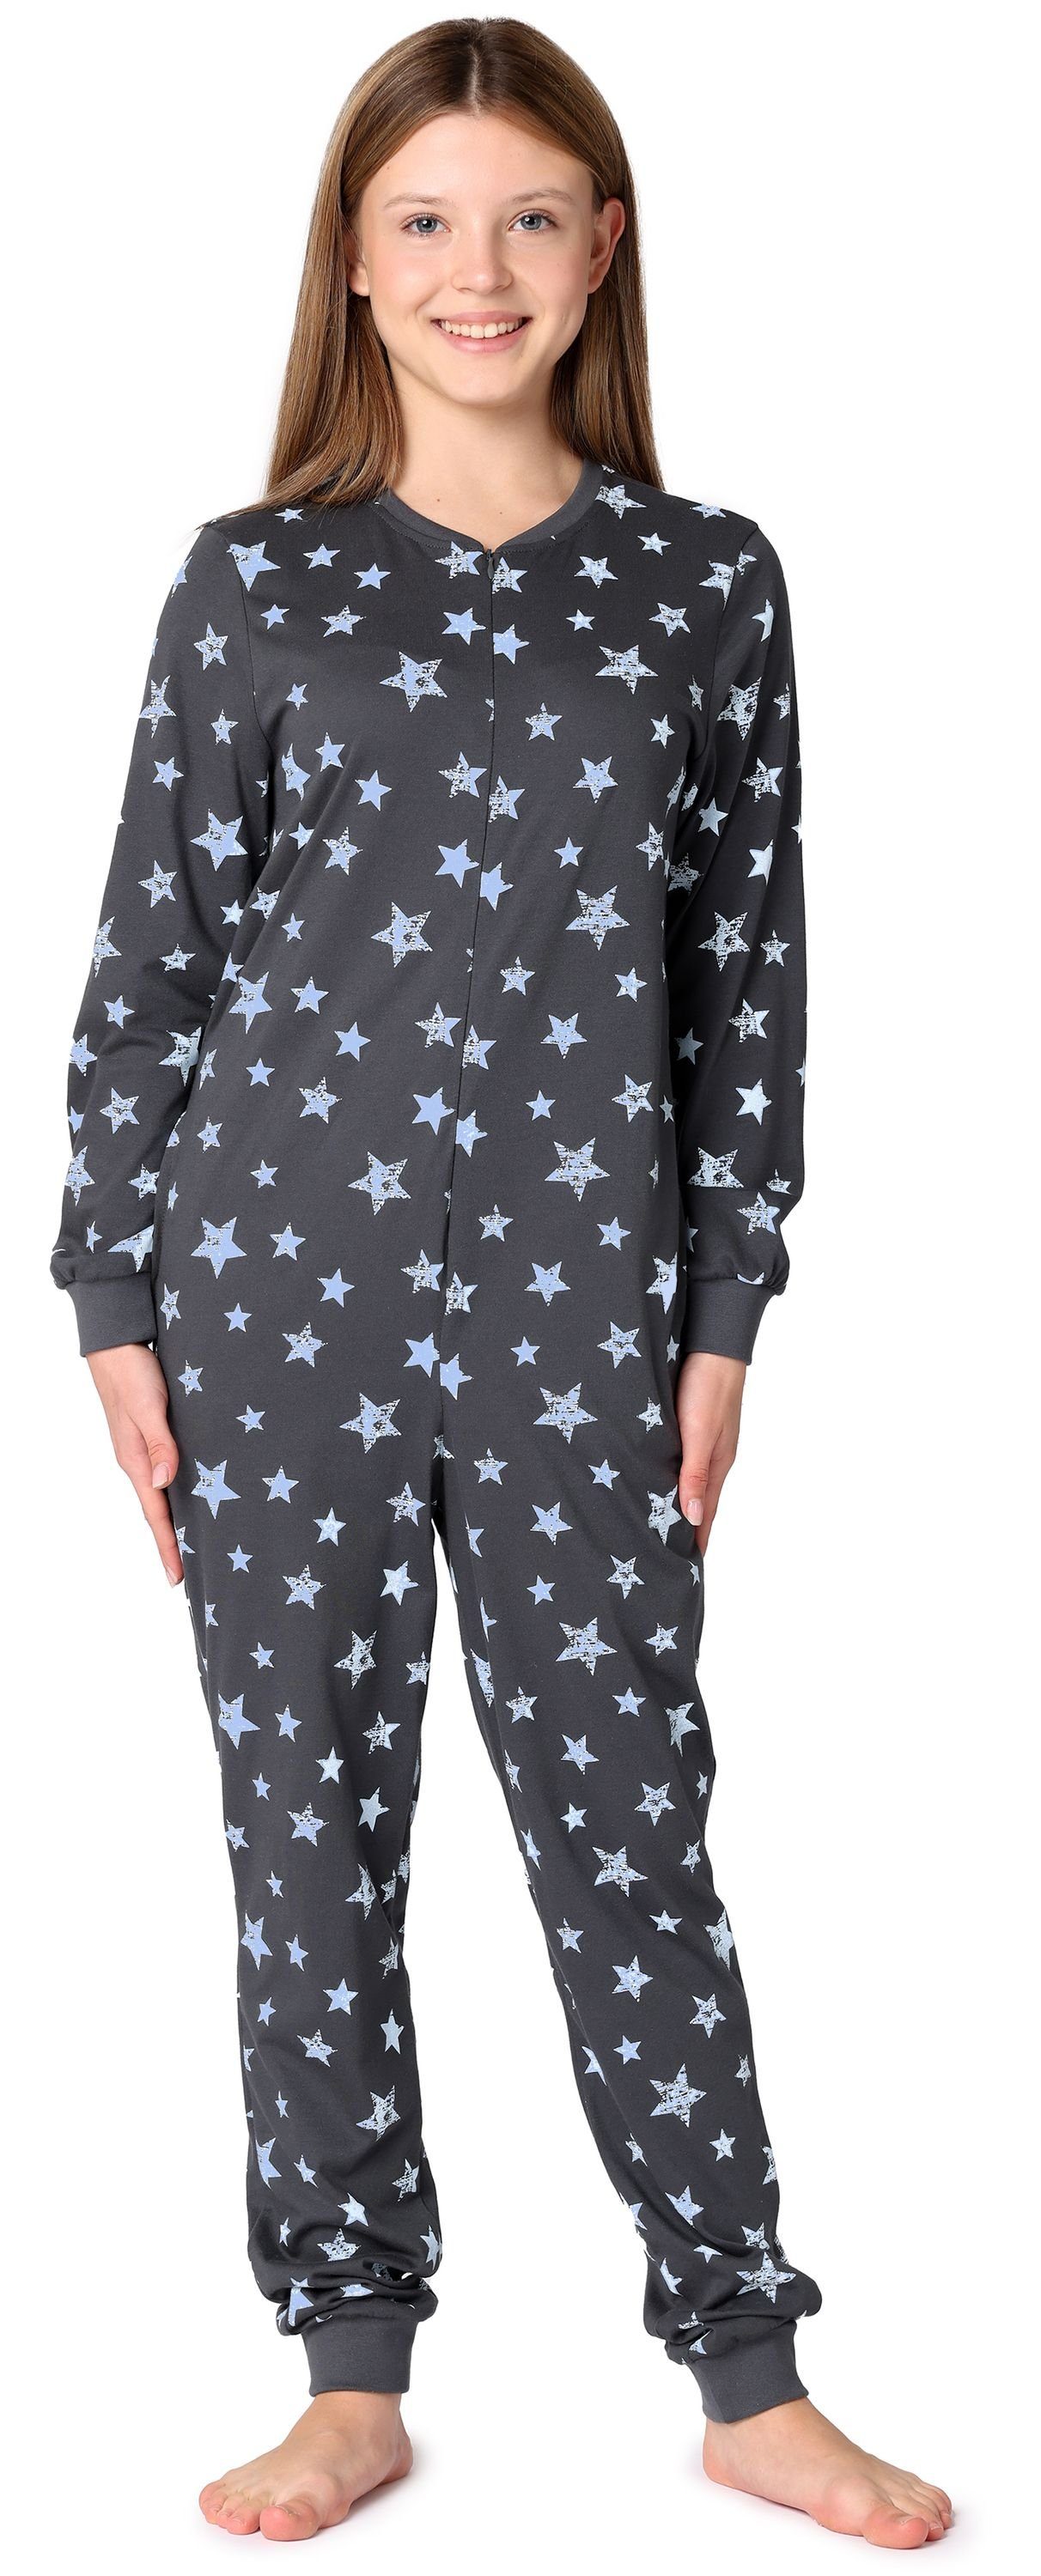 Schlafanzug Sterne Jugend MS10-235 Grafit/Blau Schlafanzug Style Schlafoverall Mädchen Merry